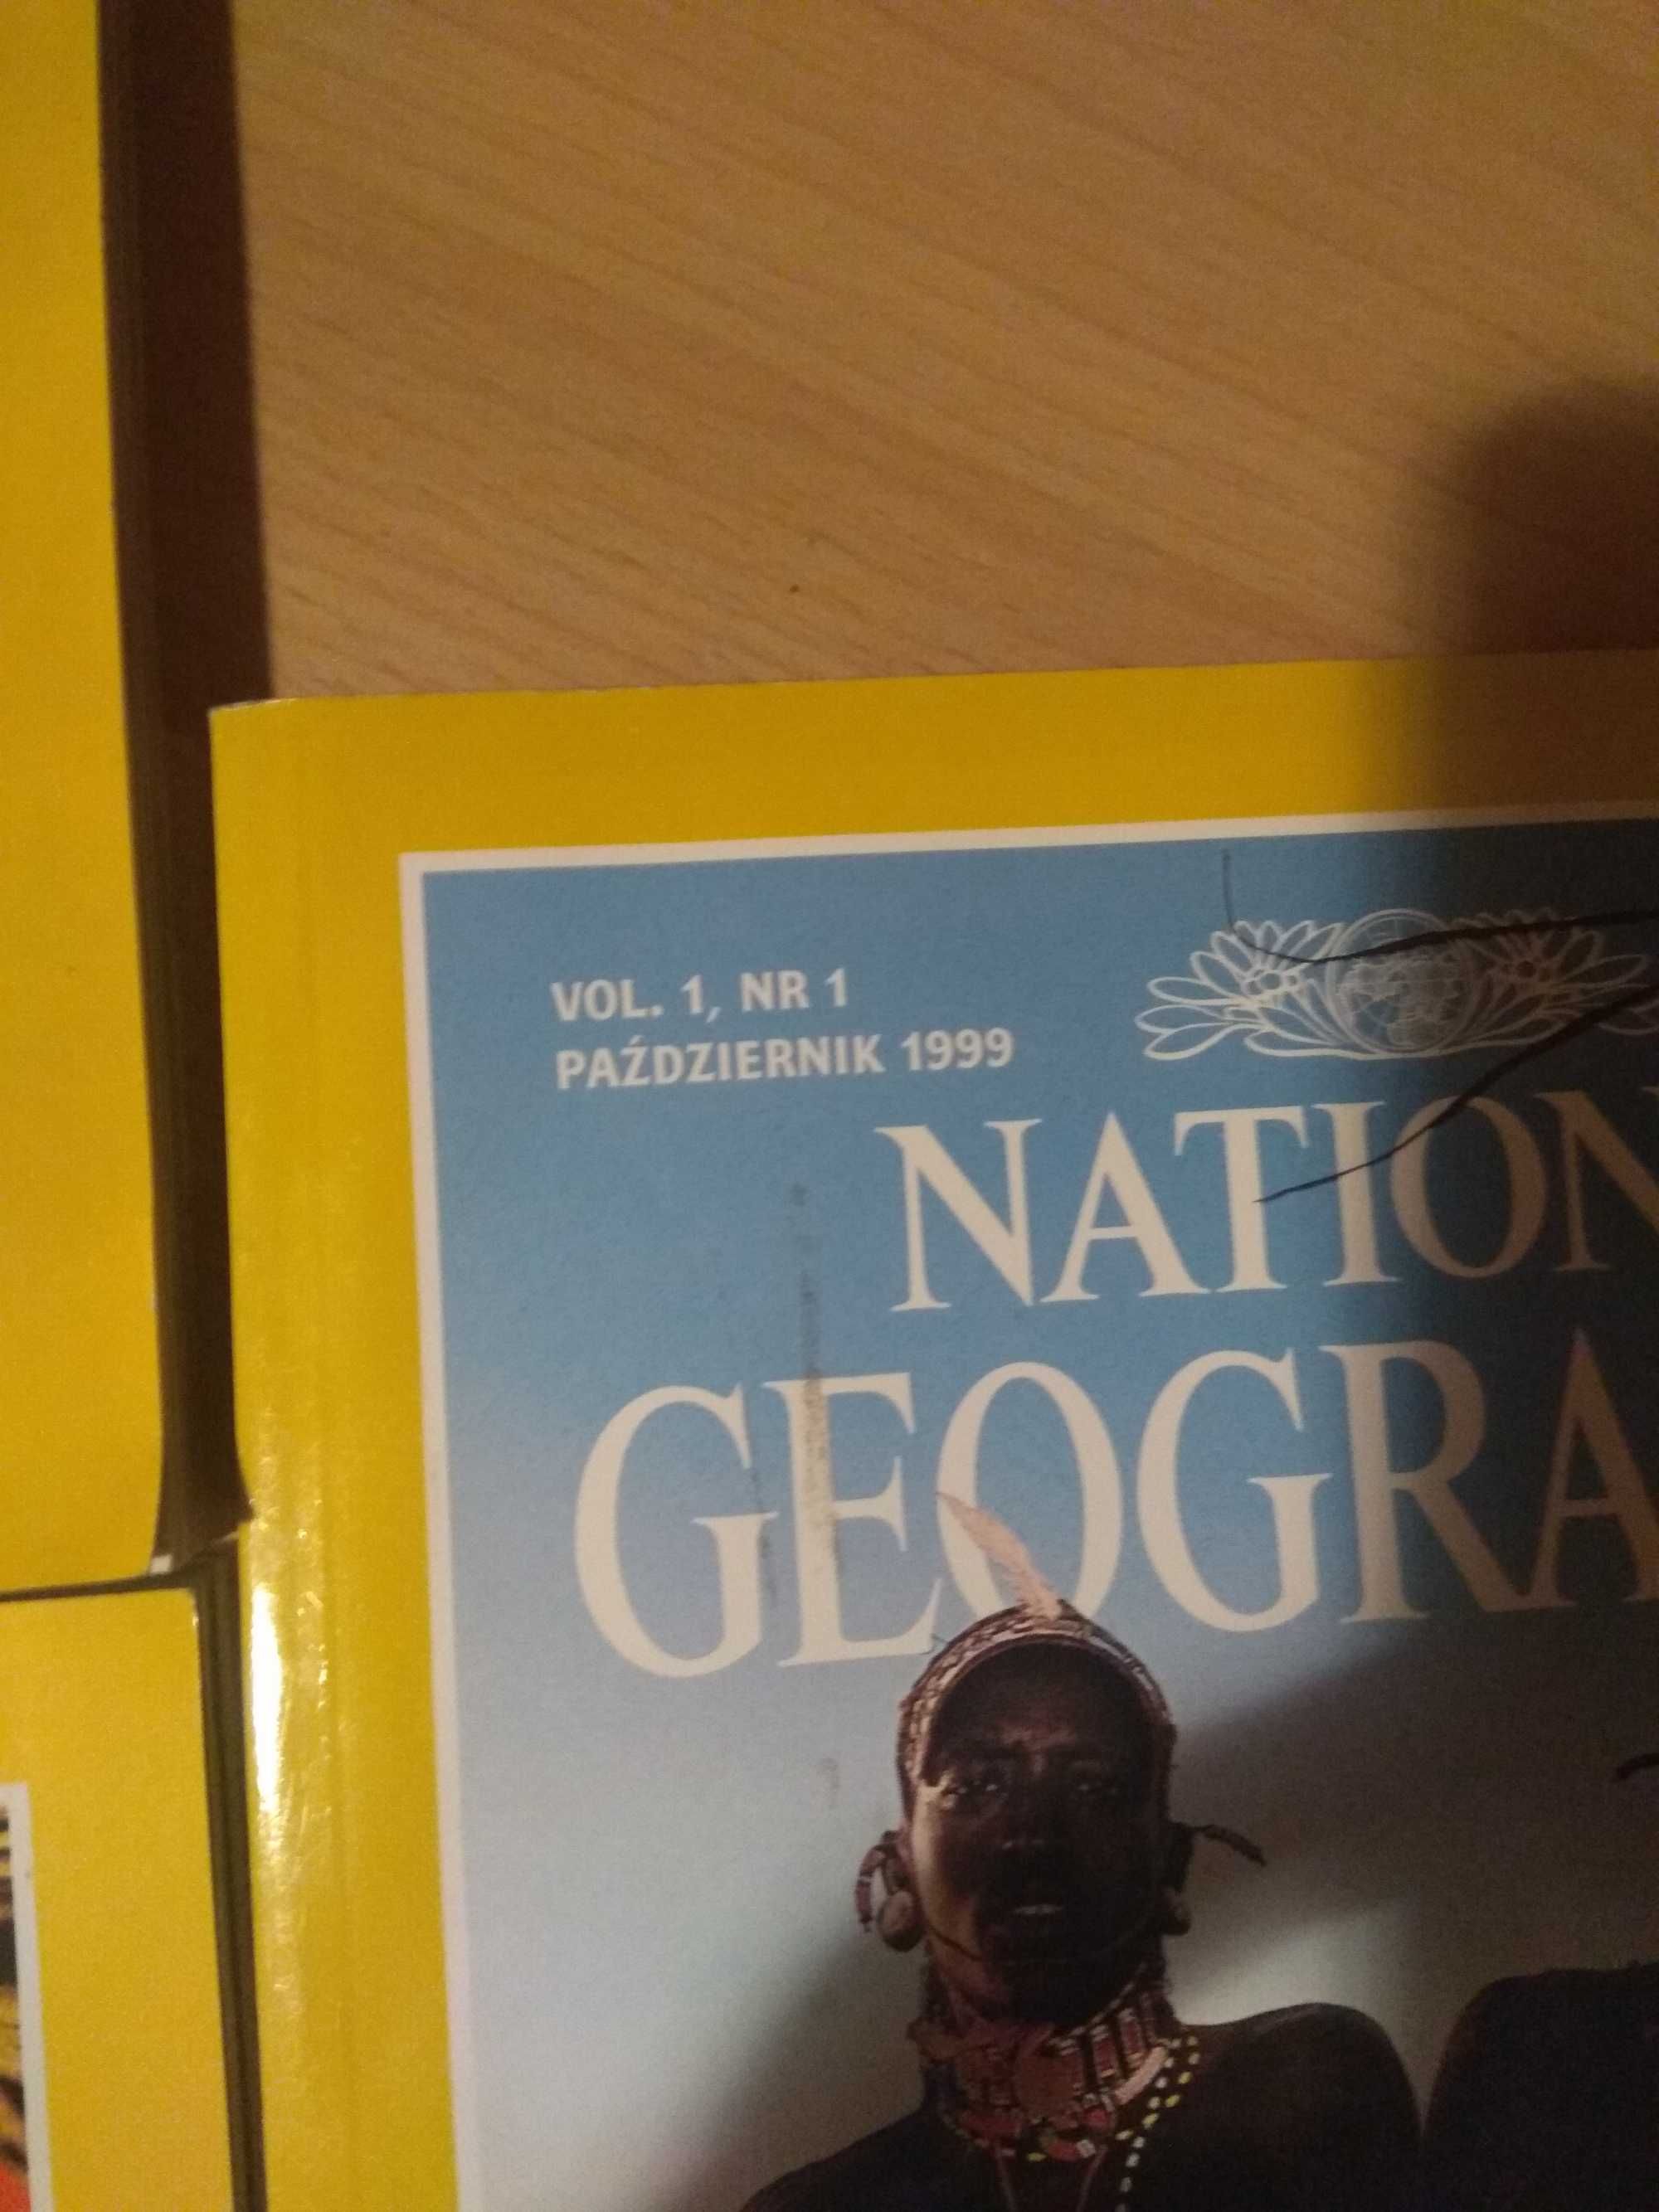 National Geographic 1999 i 2000 cena za całość 4 sztuki